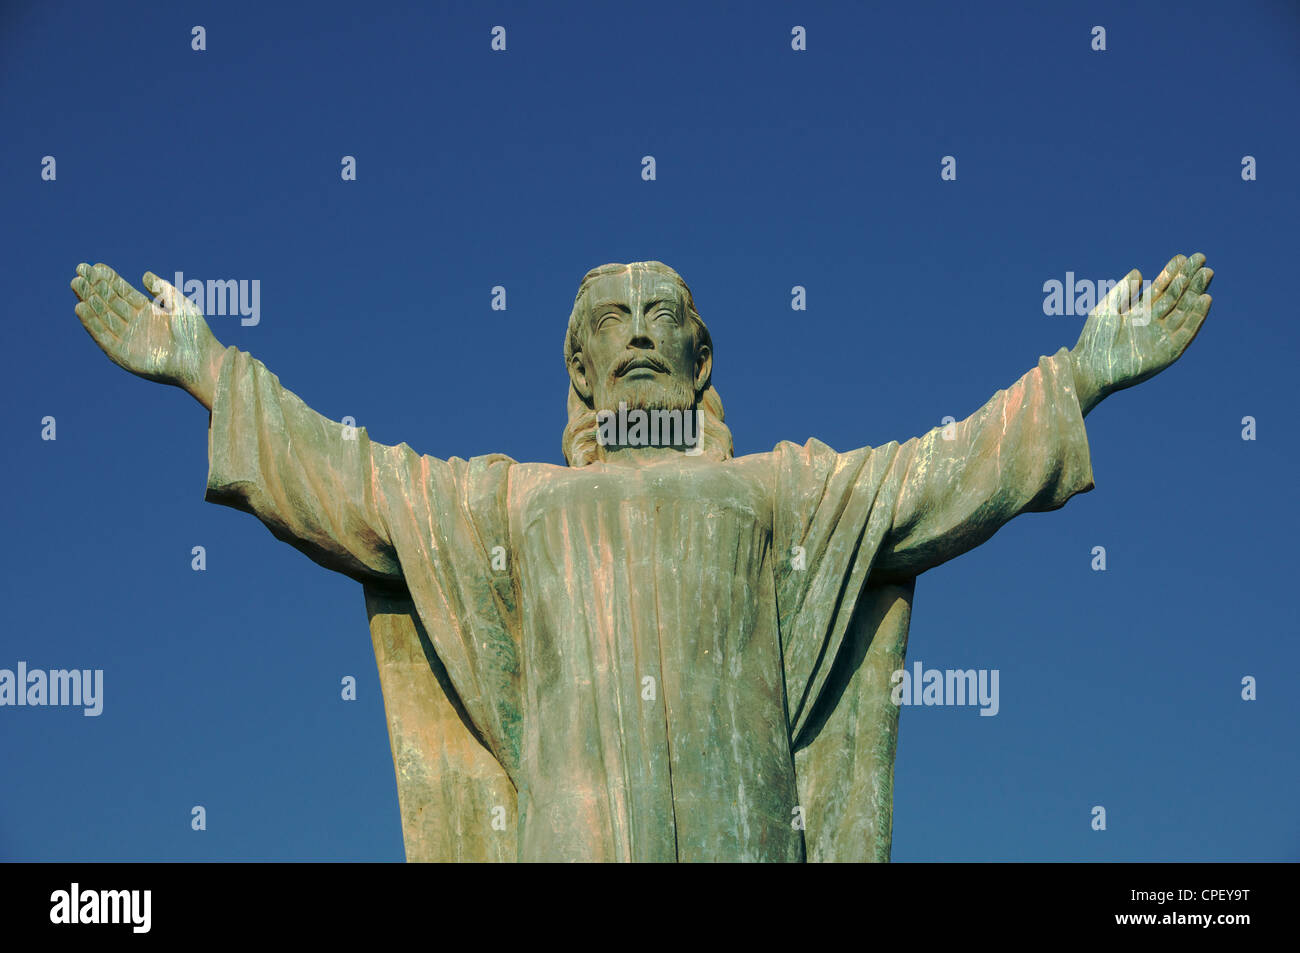 Statue of Christ El Morro Arica Chile Stock Photo